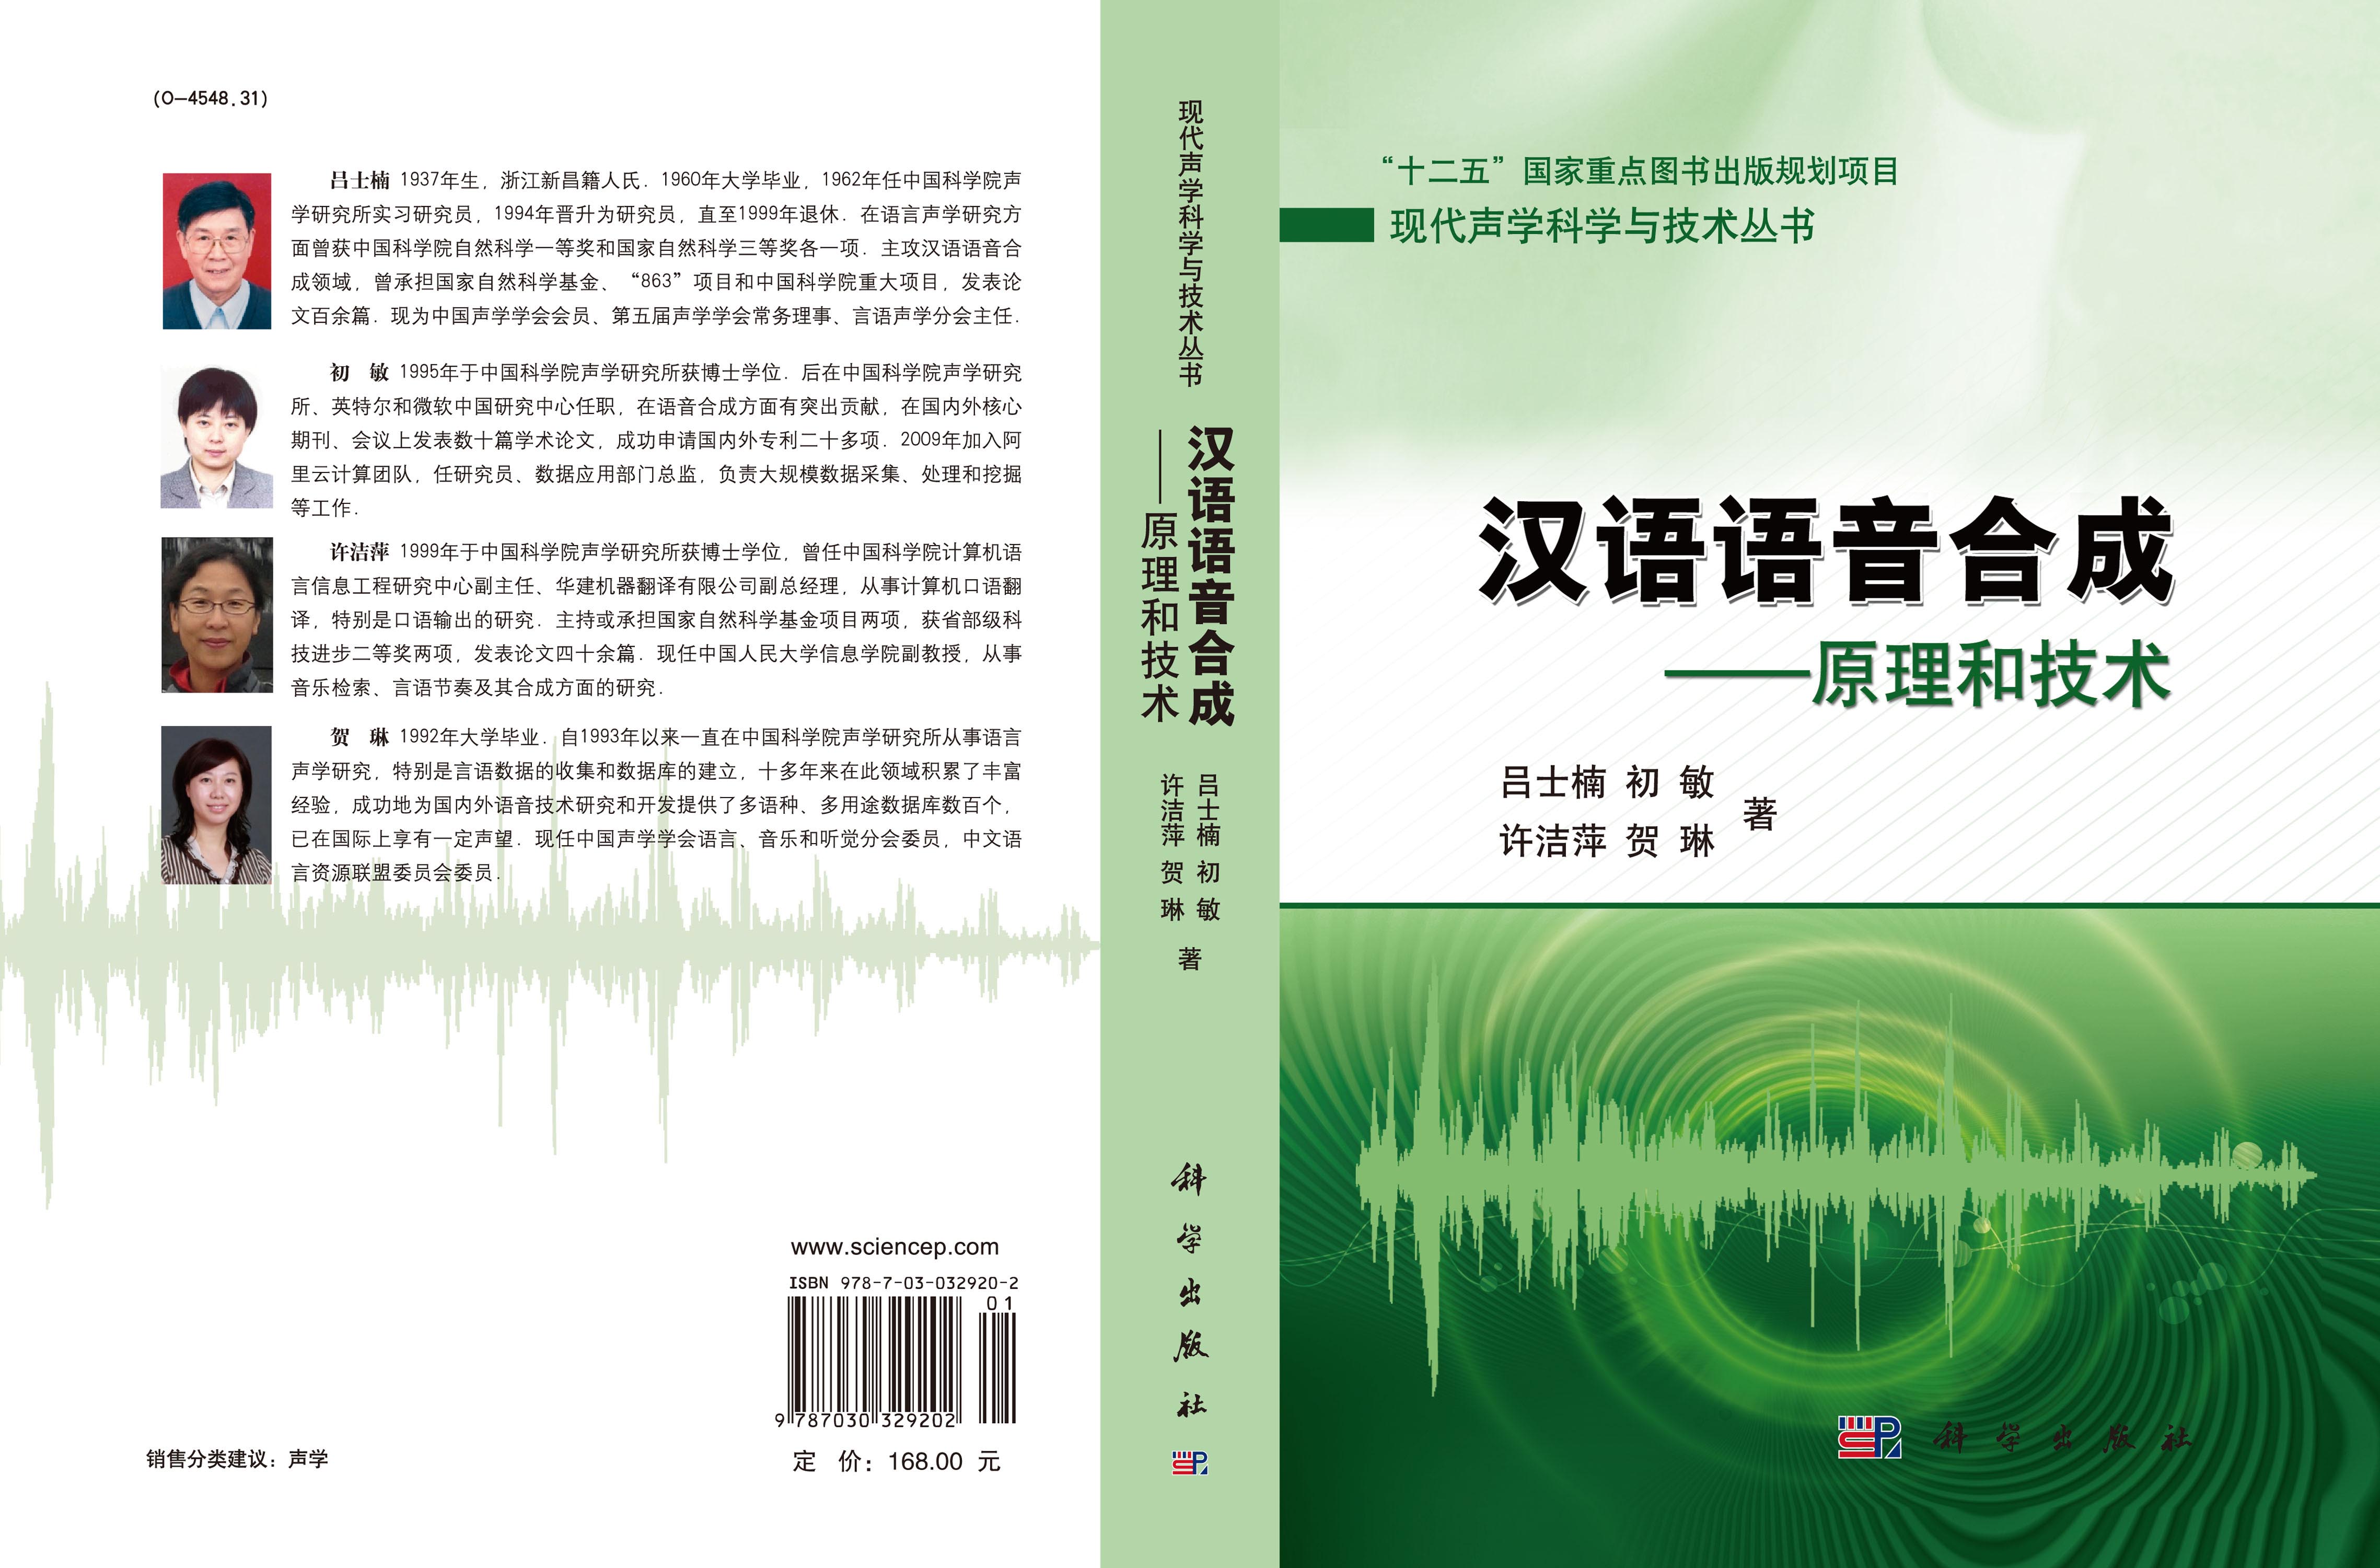 汉语语音合成——原理和技术